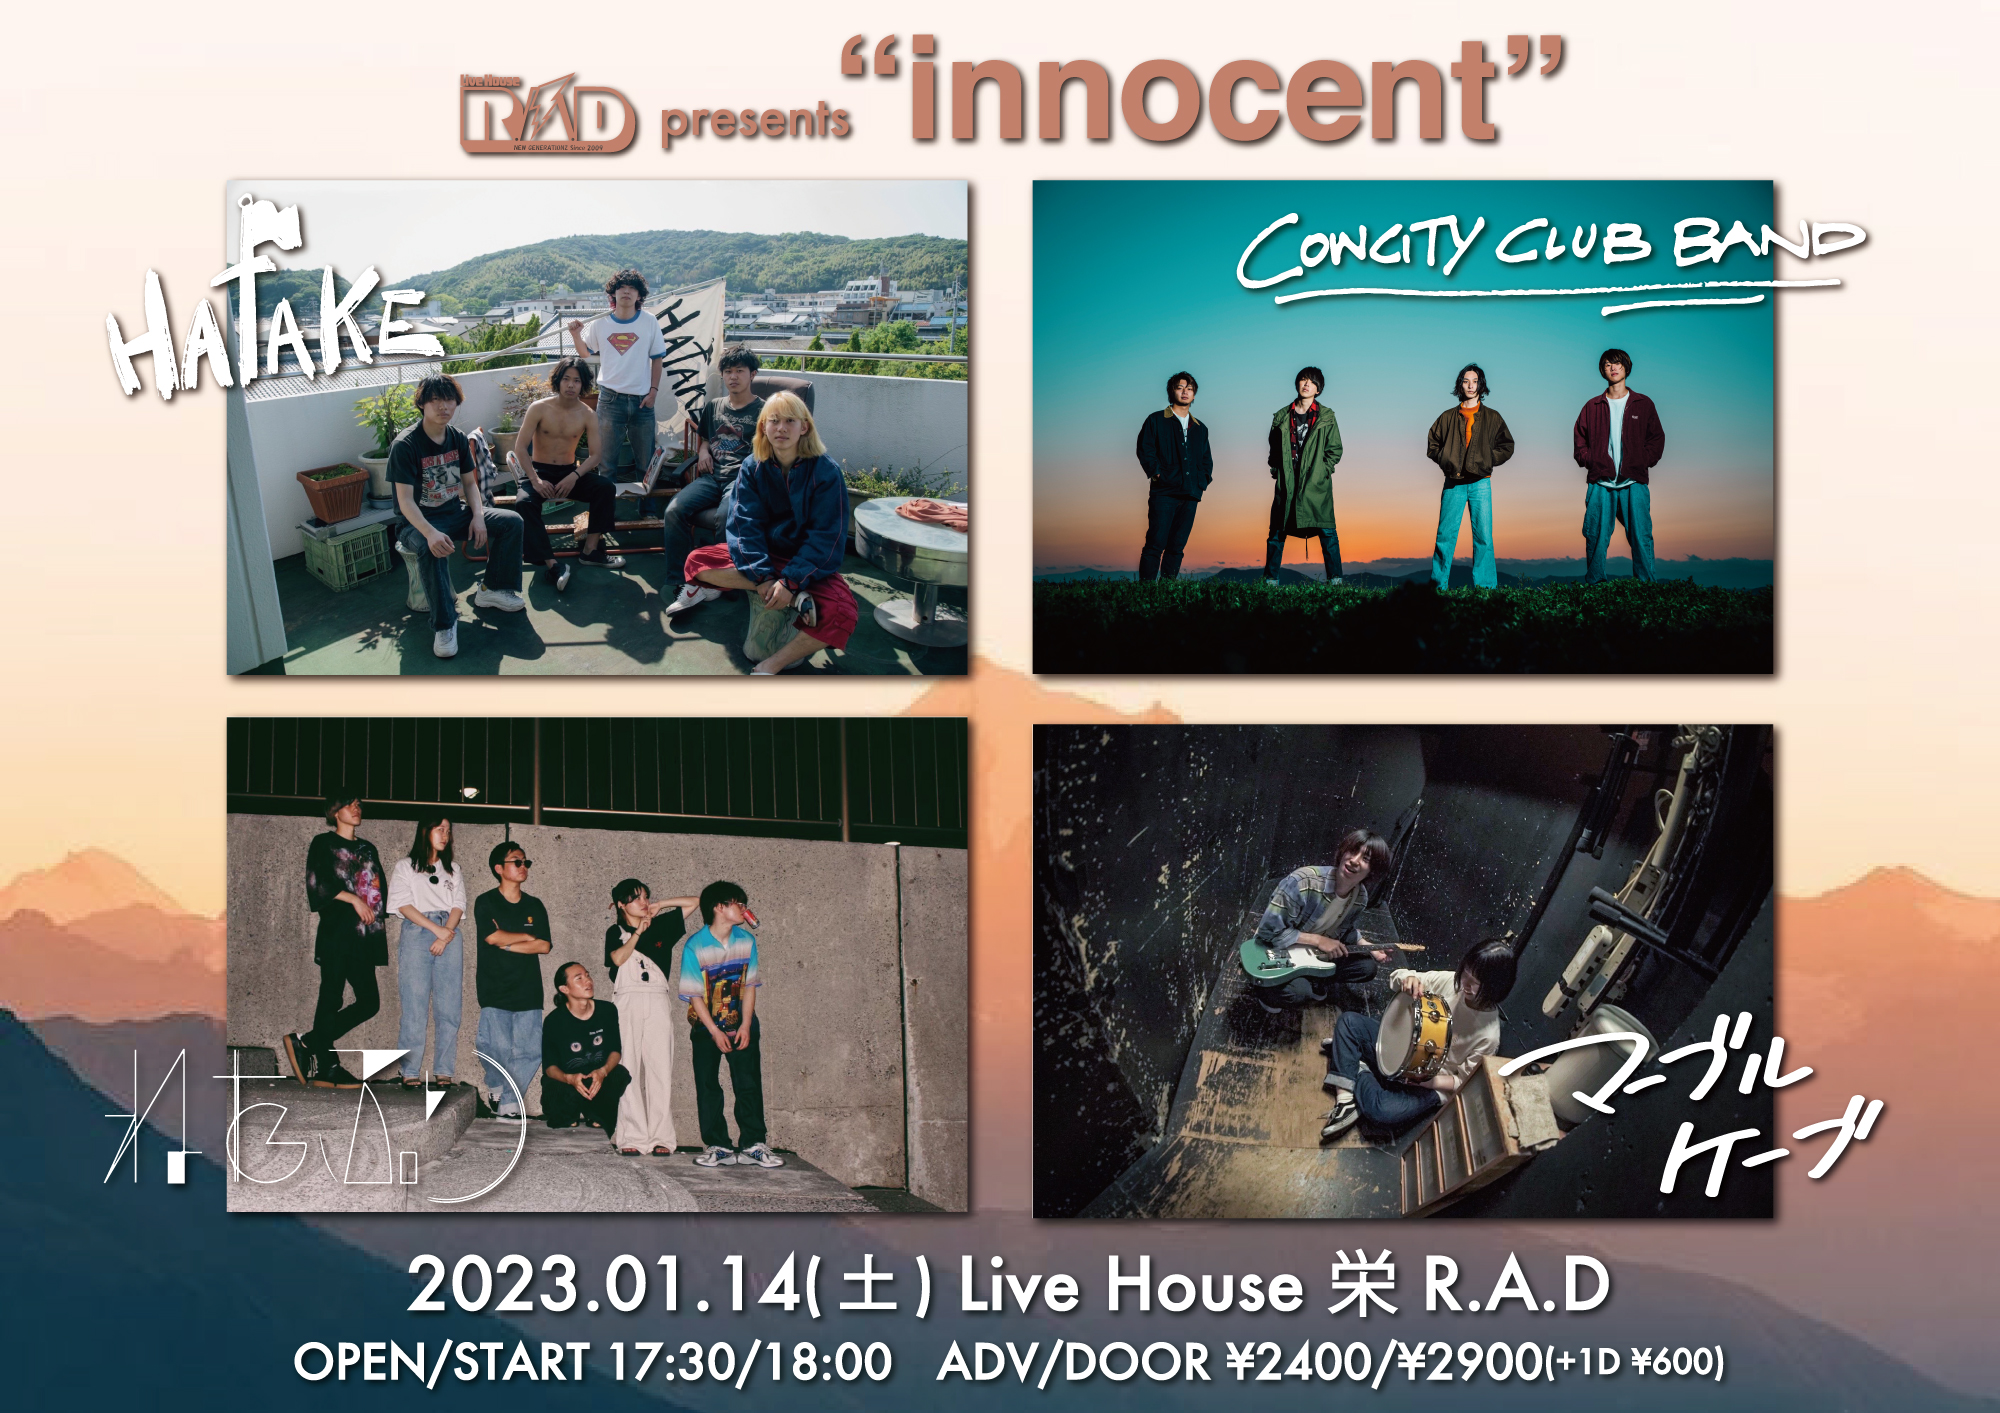 R.A.D presents "innocent"